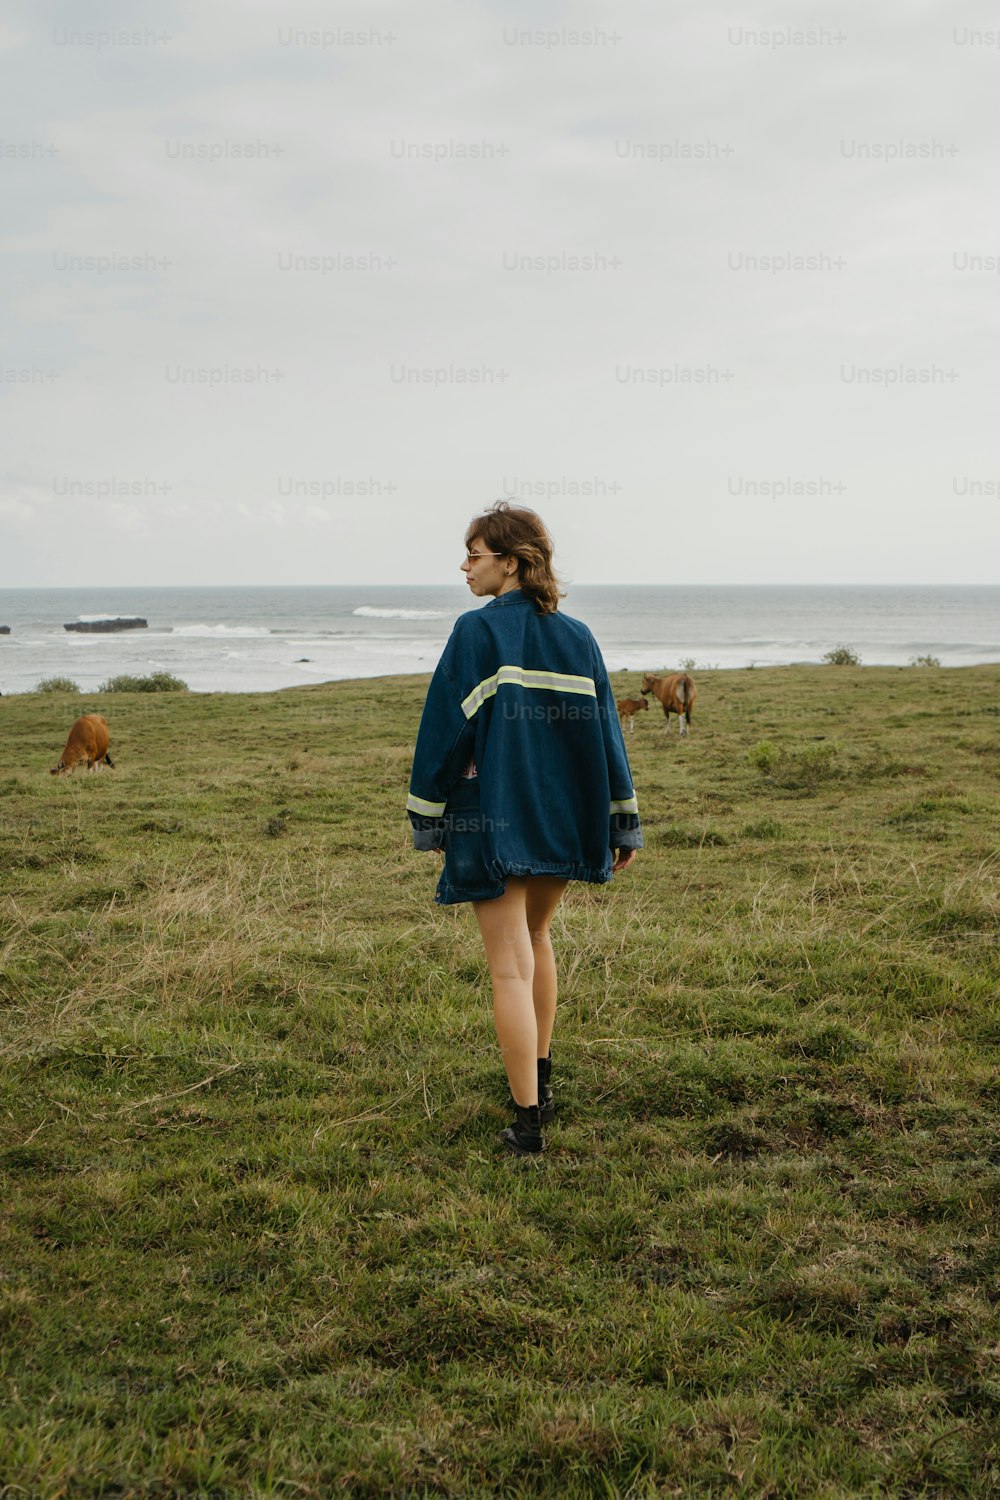 Una mujer con un vestido azul caminando por un campo